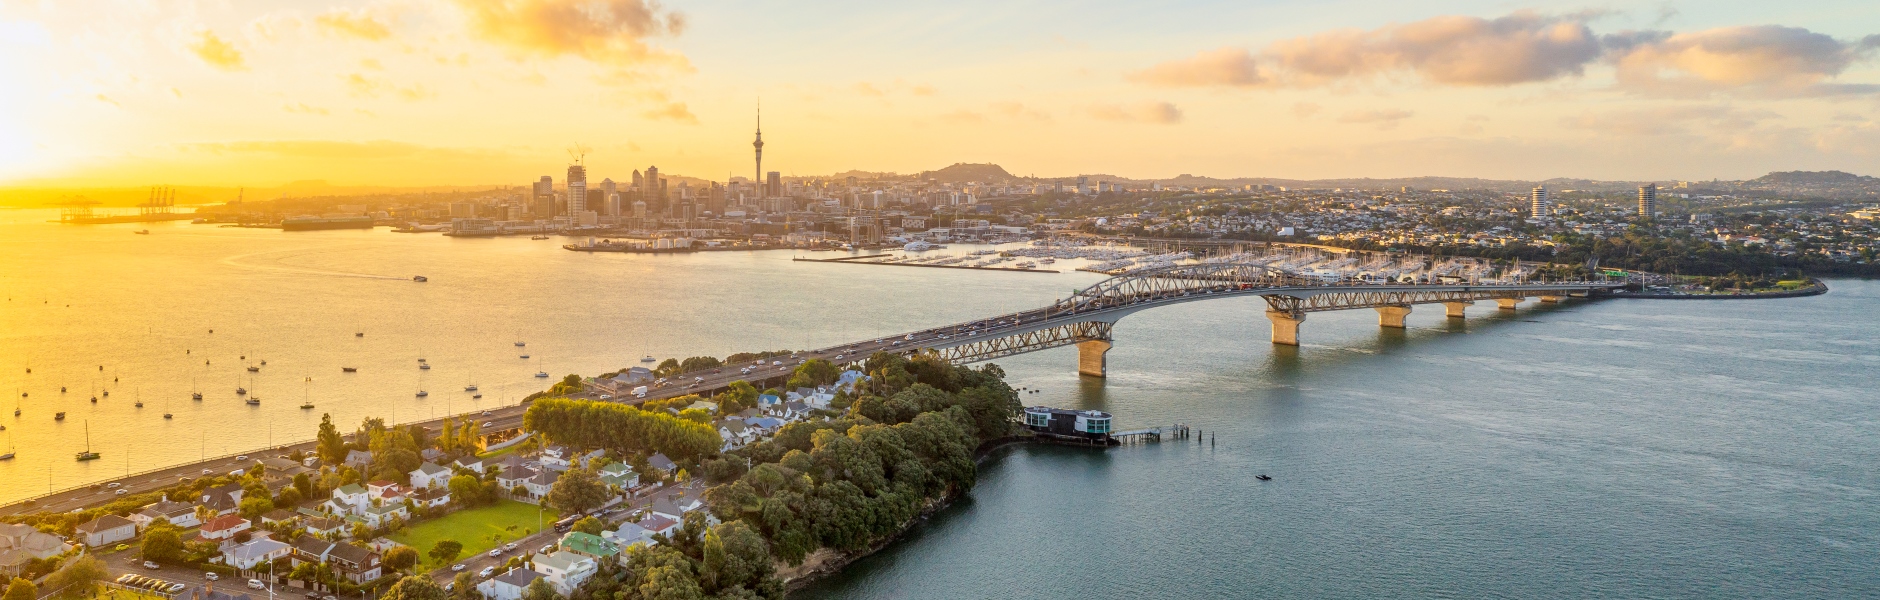 New Zealand-Auckland-harbour bridge